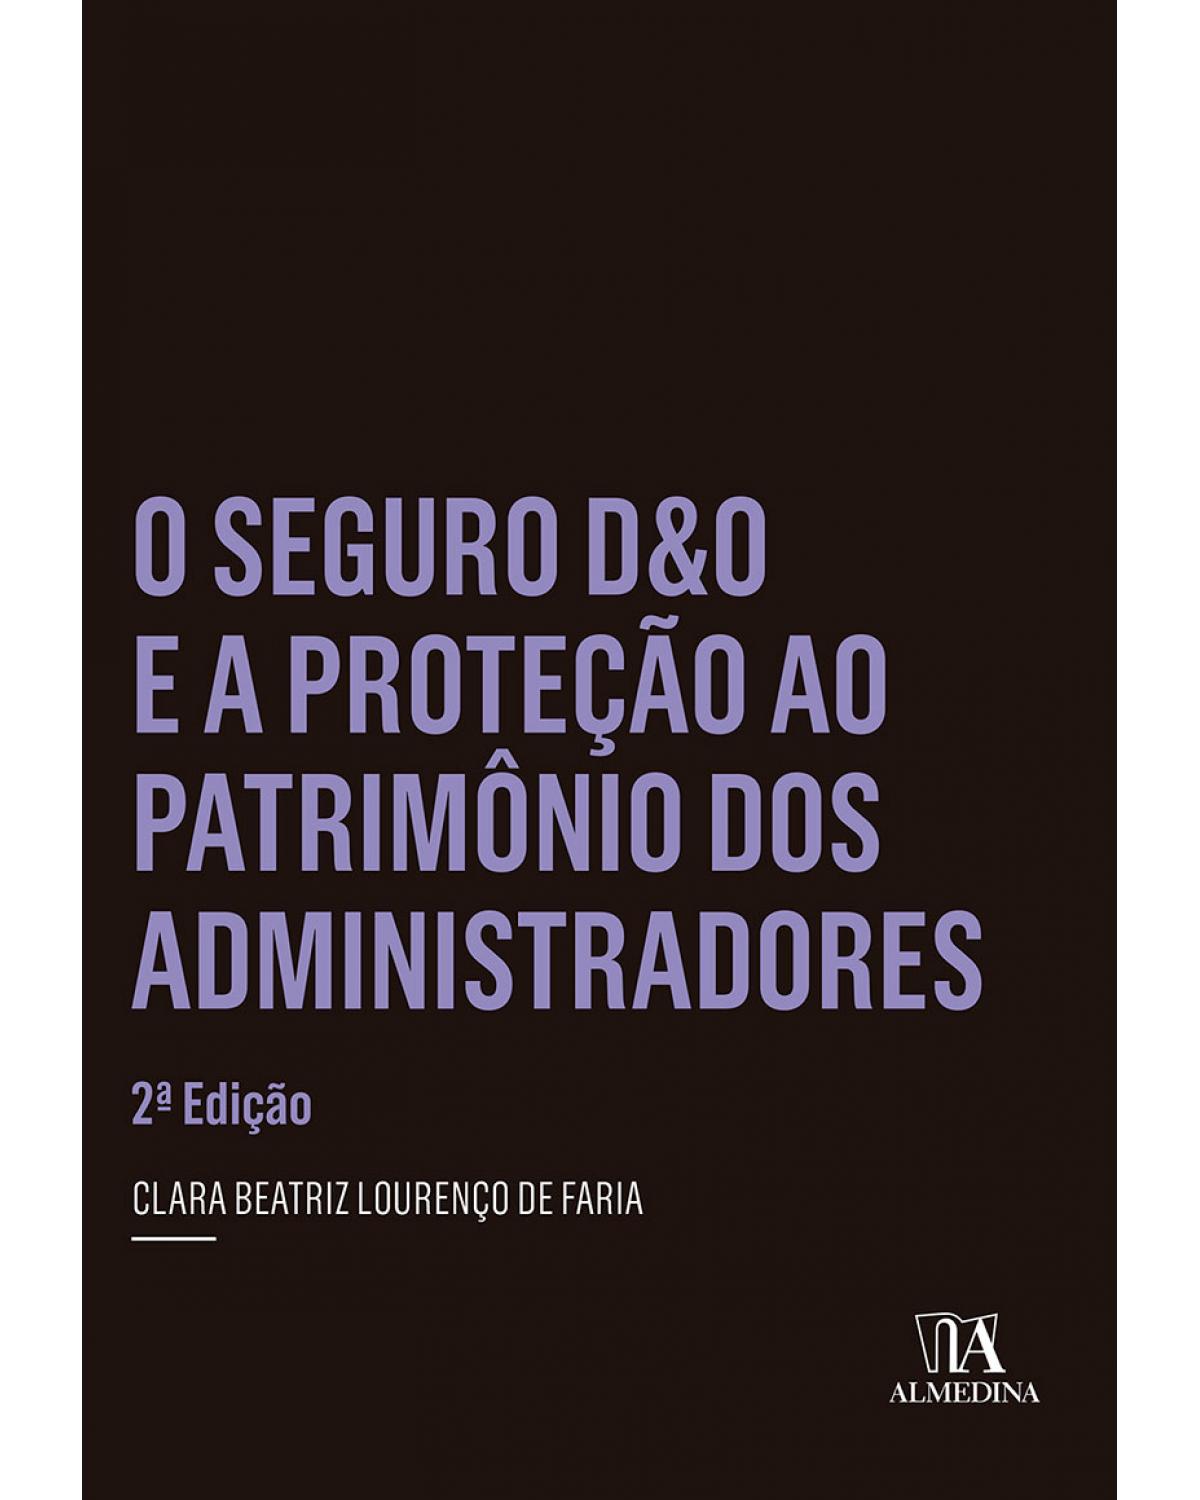 O seguro D&O e a proteção ao patrimônio dos administradores - 2ª Edição | 2015